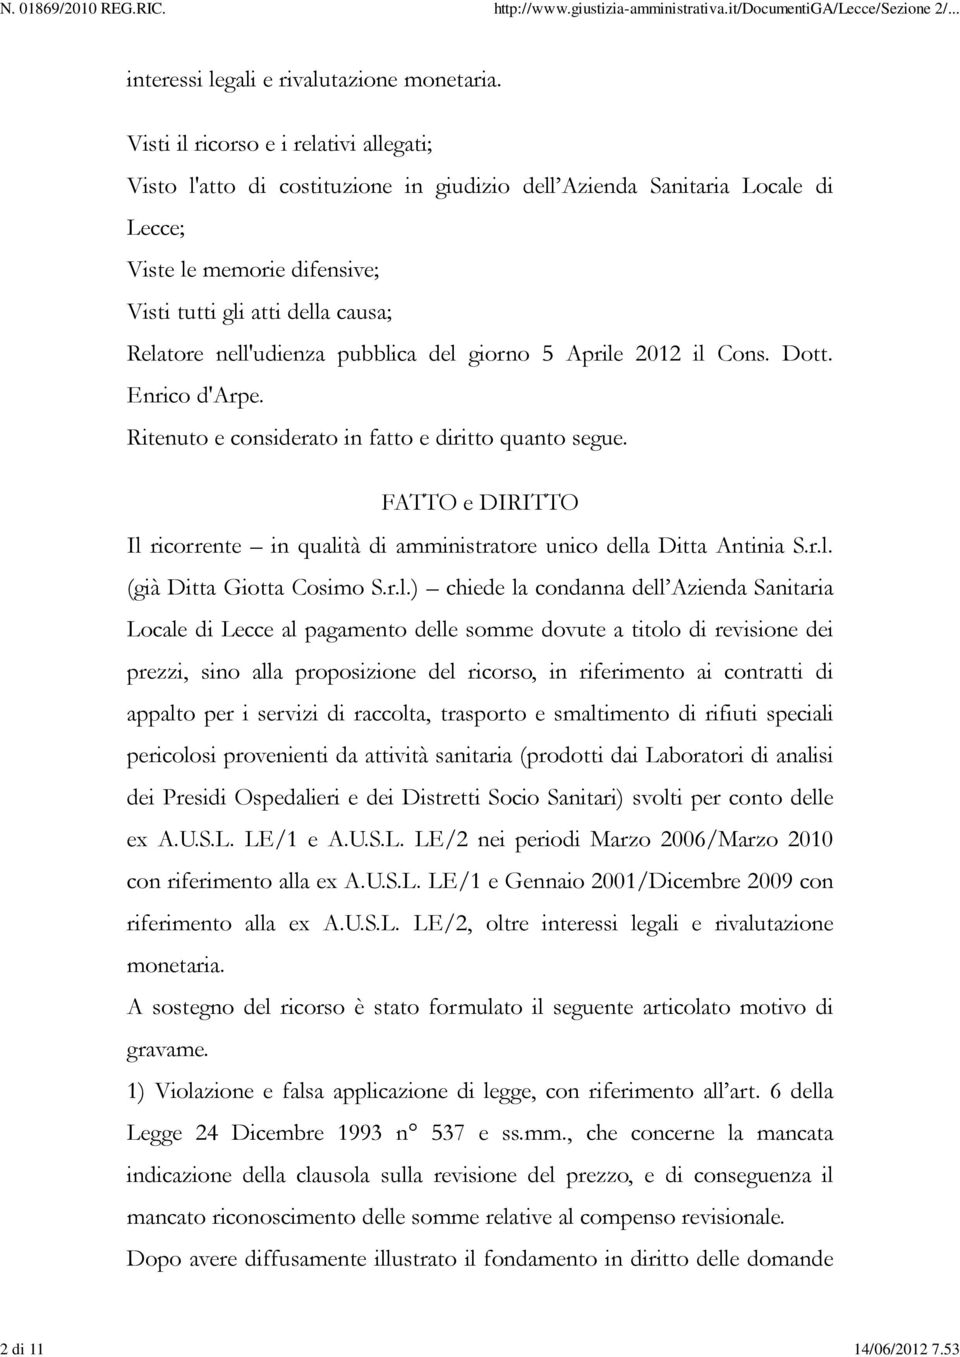 nell'udienza pubblica del giorno 5 Aprile 2012 il Cons. Dott. Enrico d'arpe. Ritenuto e considerato in fatto e diritto quanto segue.